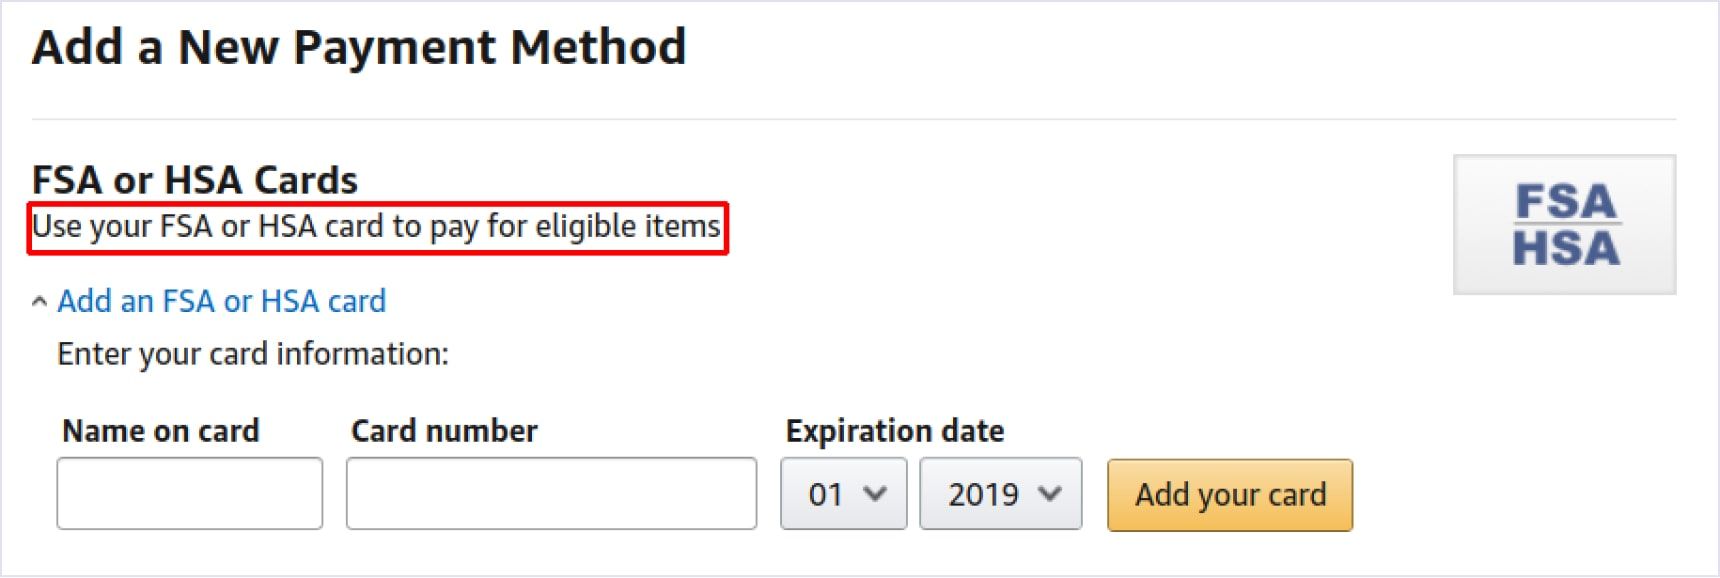 Amazon's payment methods